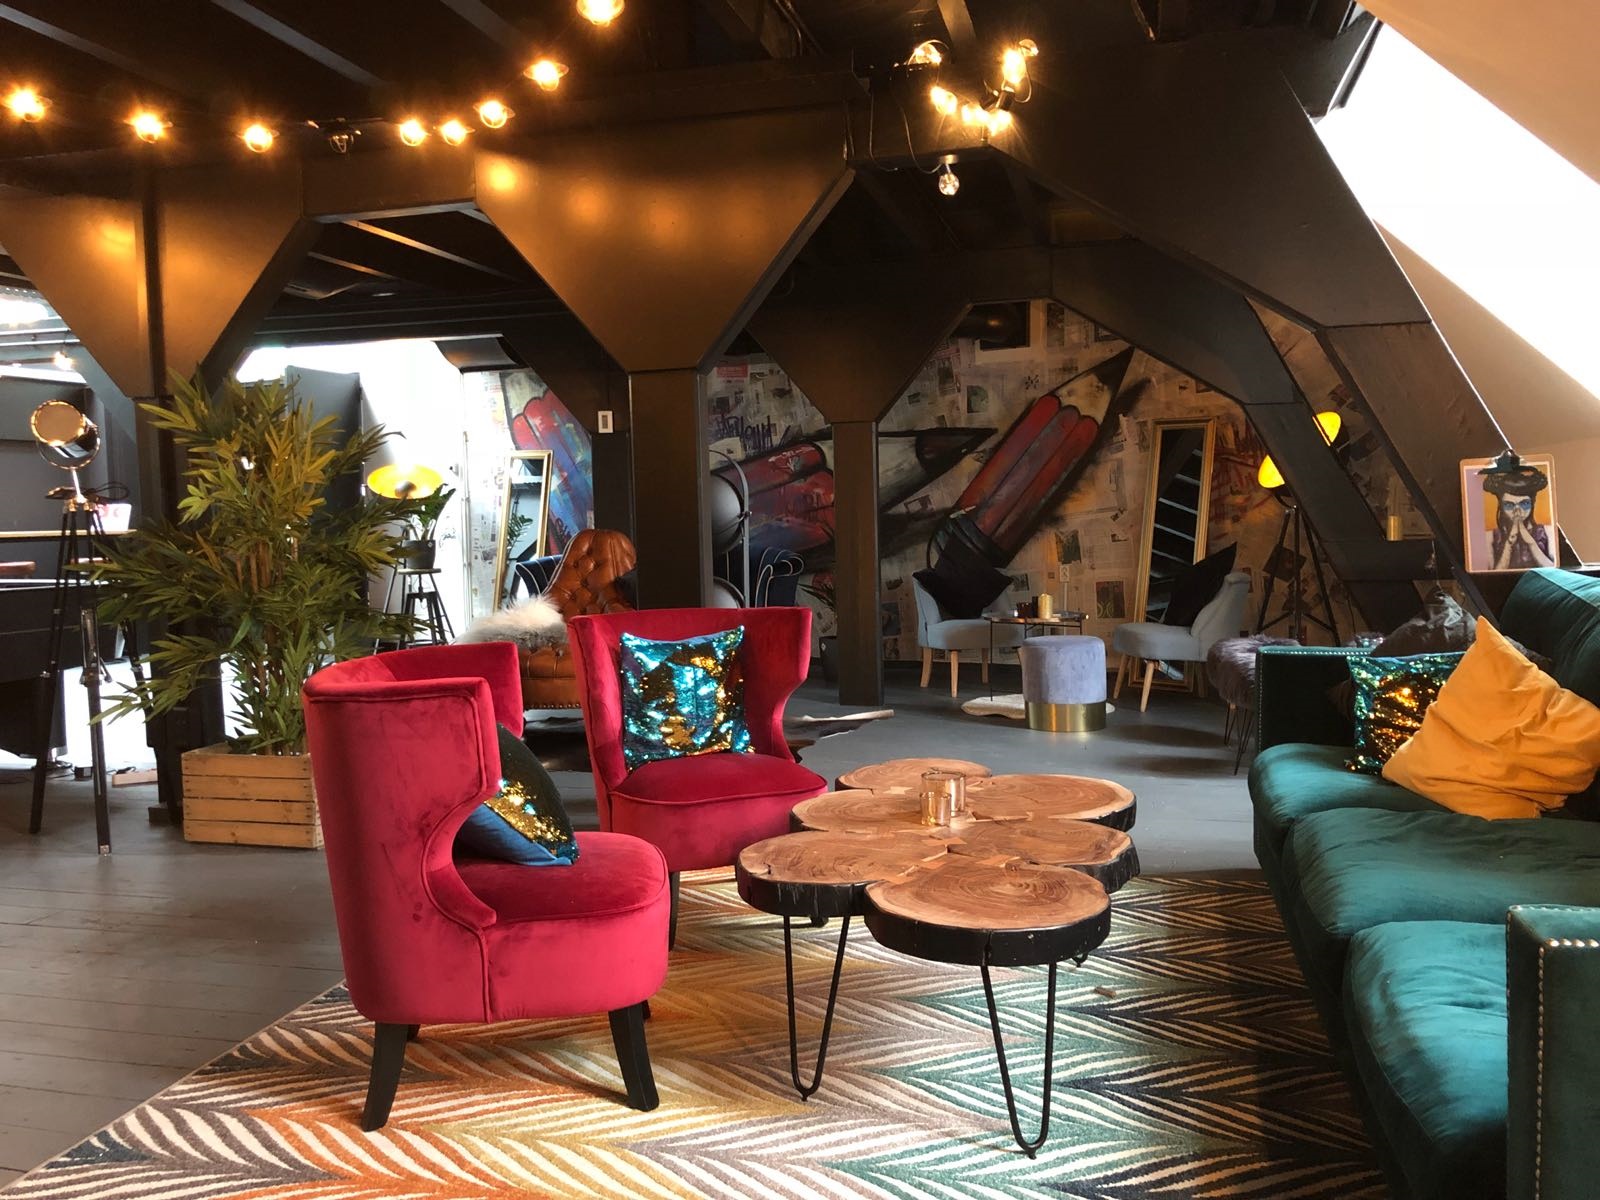 Coworking space rent24 opent tweede vestiging in centrum Amsterdam